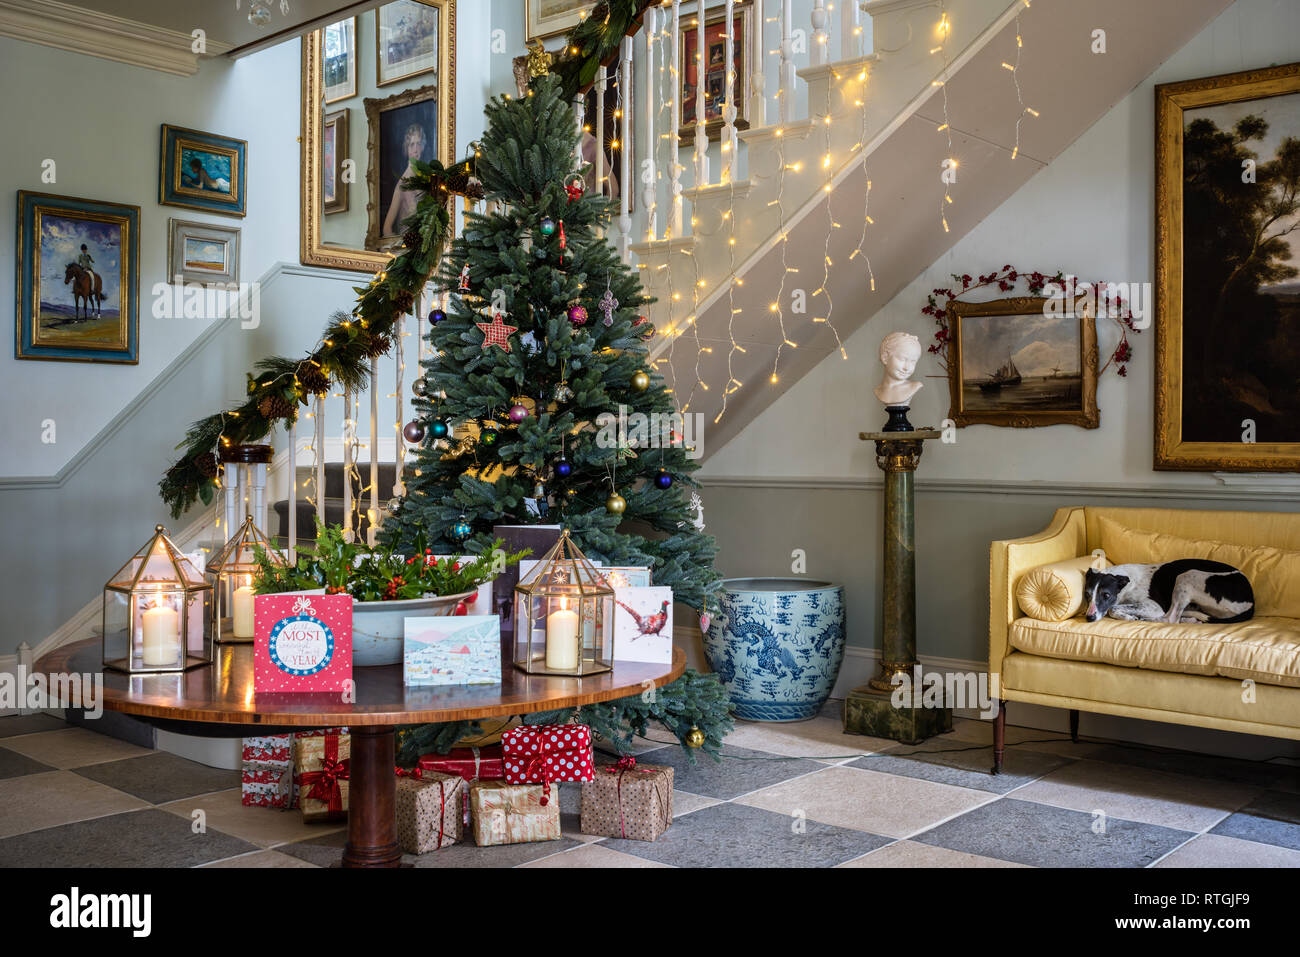 Whippet se trouve sur le canapé jaune dans le grand hall d'entrée avec escalier construit par Geraghty menuiserie et l'arbre de Noël de l'épinette Bleu royal Banque D'Images